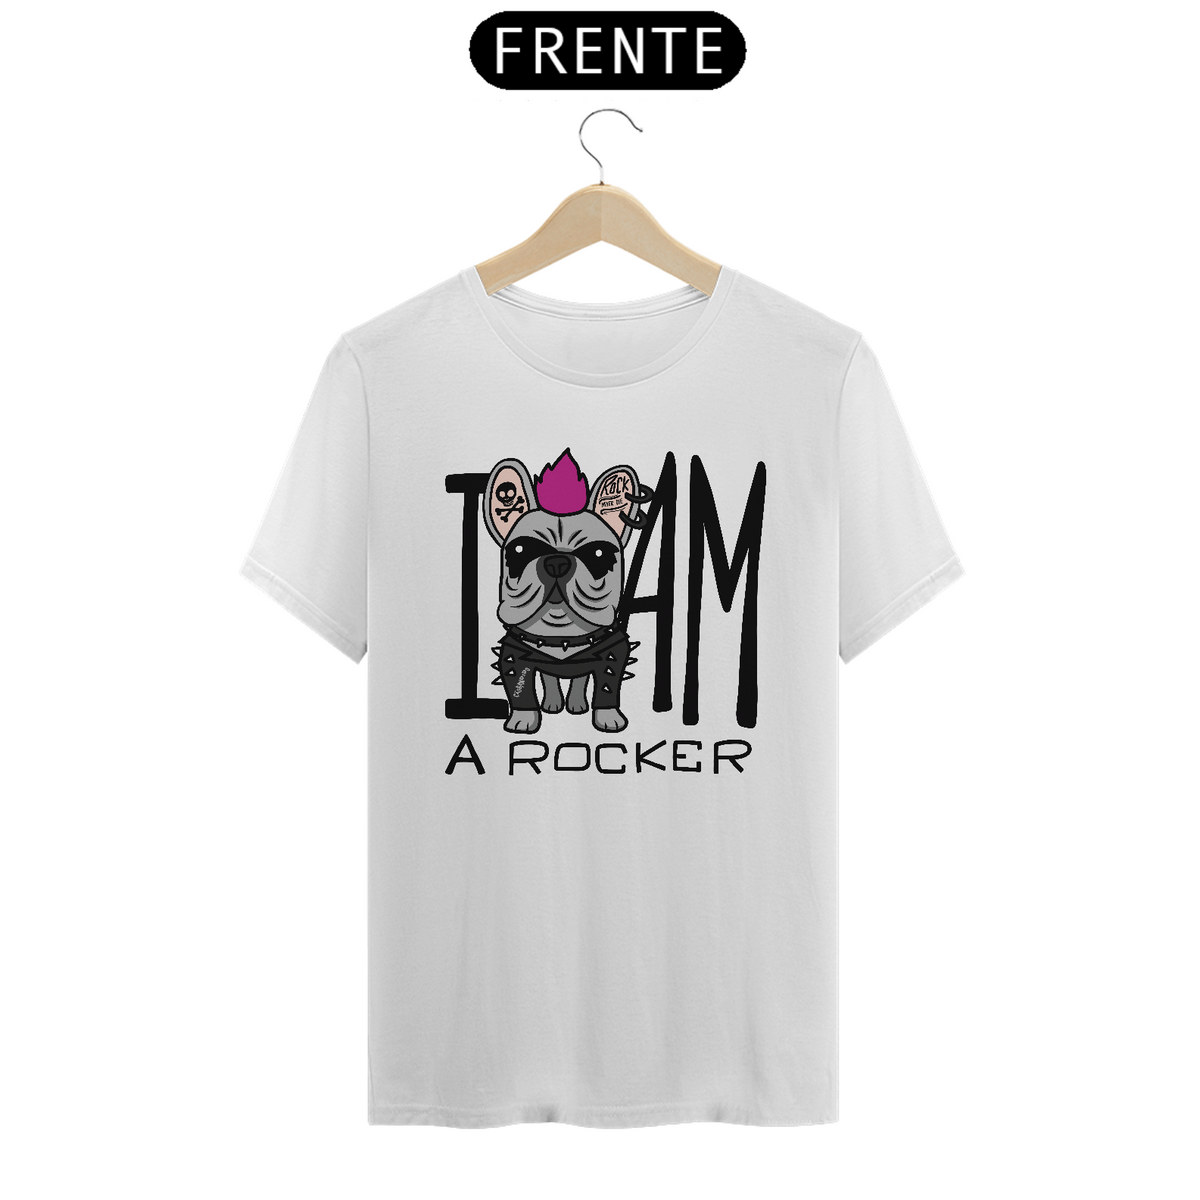 Nome do produto: Camiseta I Am a Rocker